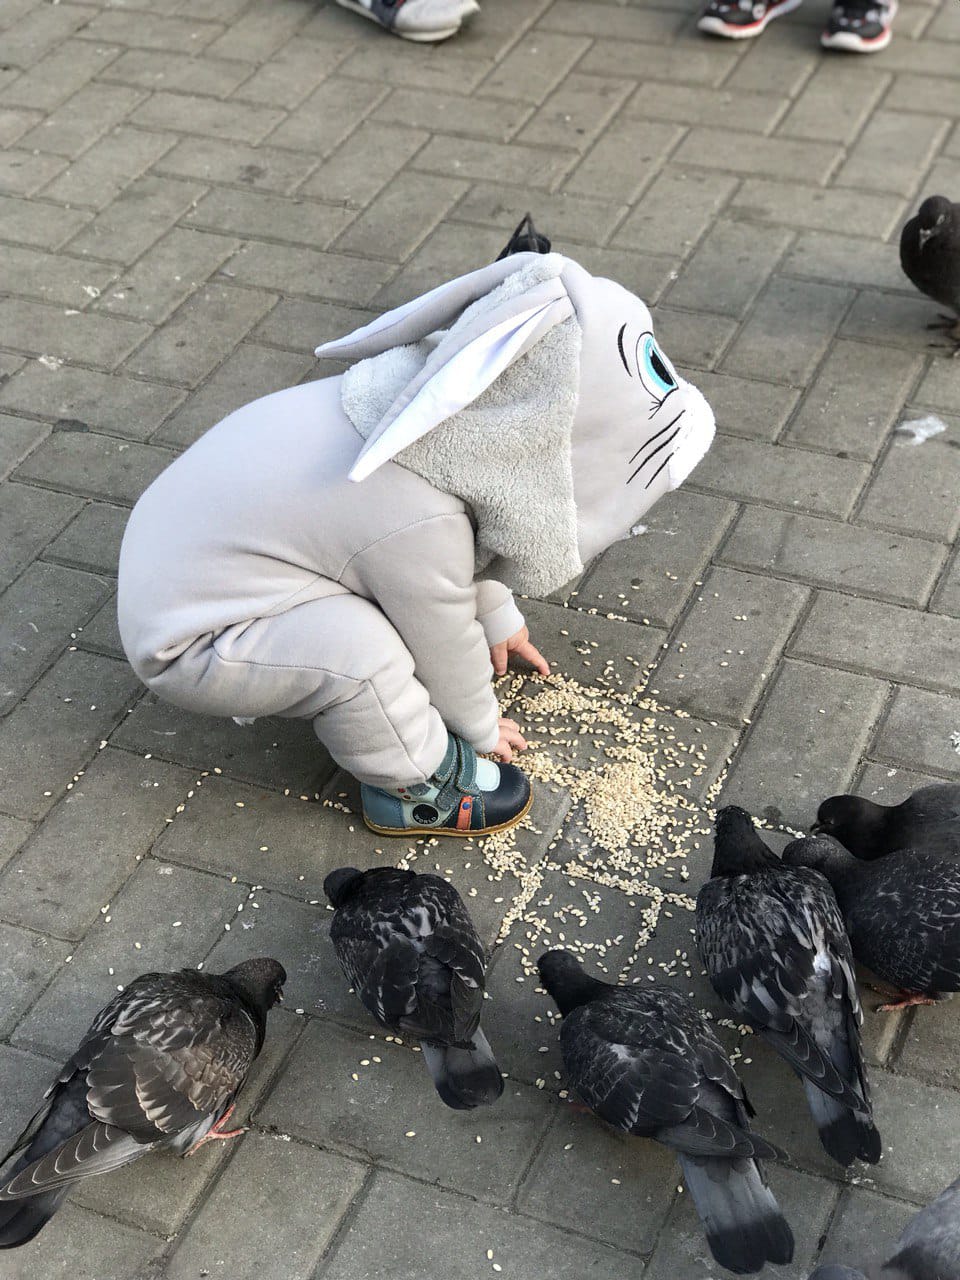 Акция "Покормим птиц зимой" 